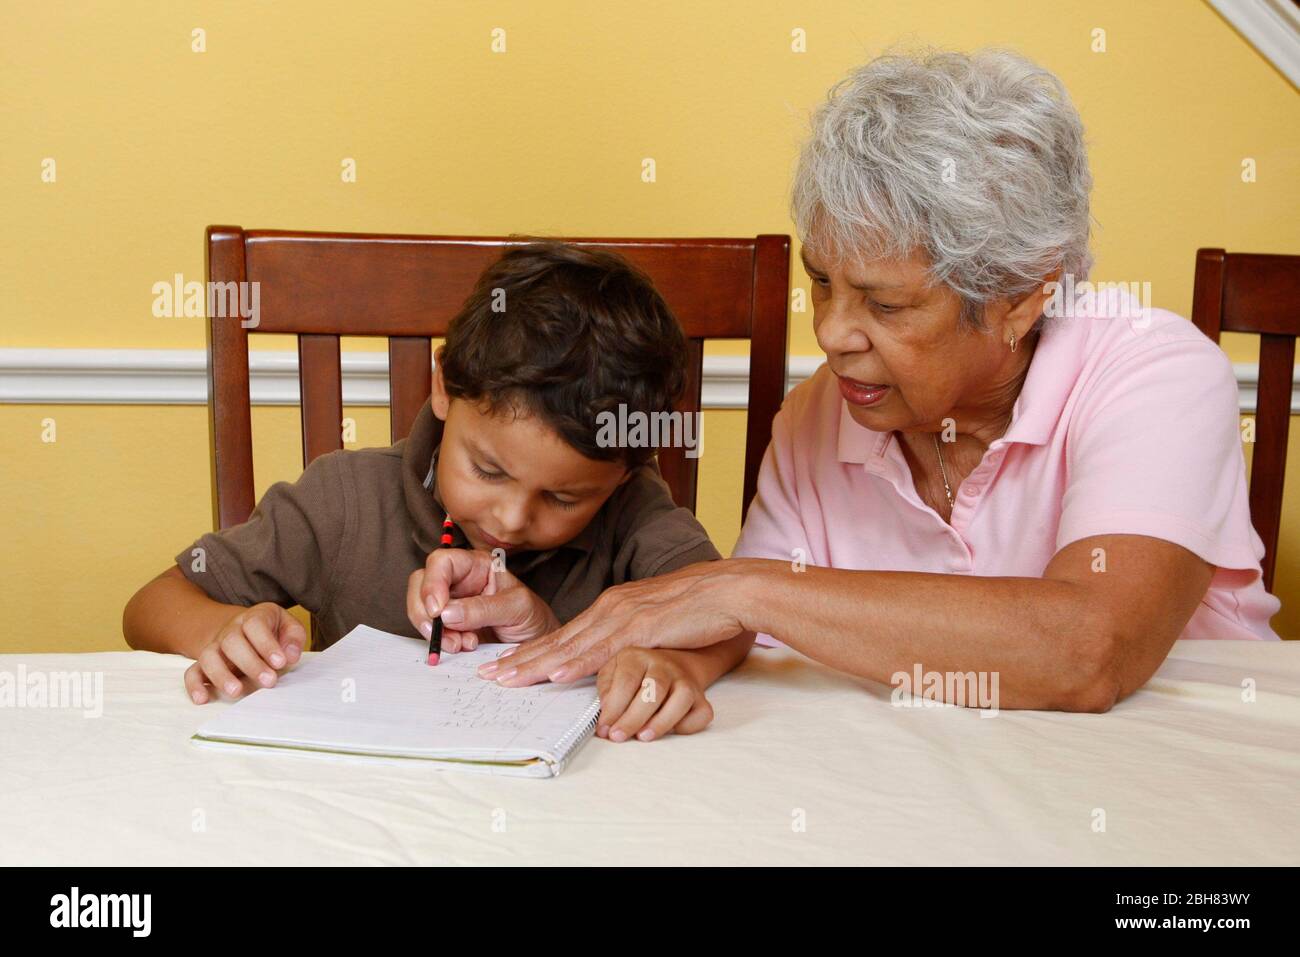 Austin, Texas États-Unis, 22 août 2009: Garçon mexicain-américain de cinq ans pratiquant l'écriture à la maison tandis que sa grand-mère observe et aide. M. ©Bob Daemmrich Banque D'Images